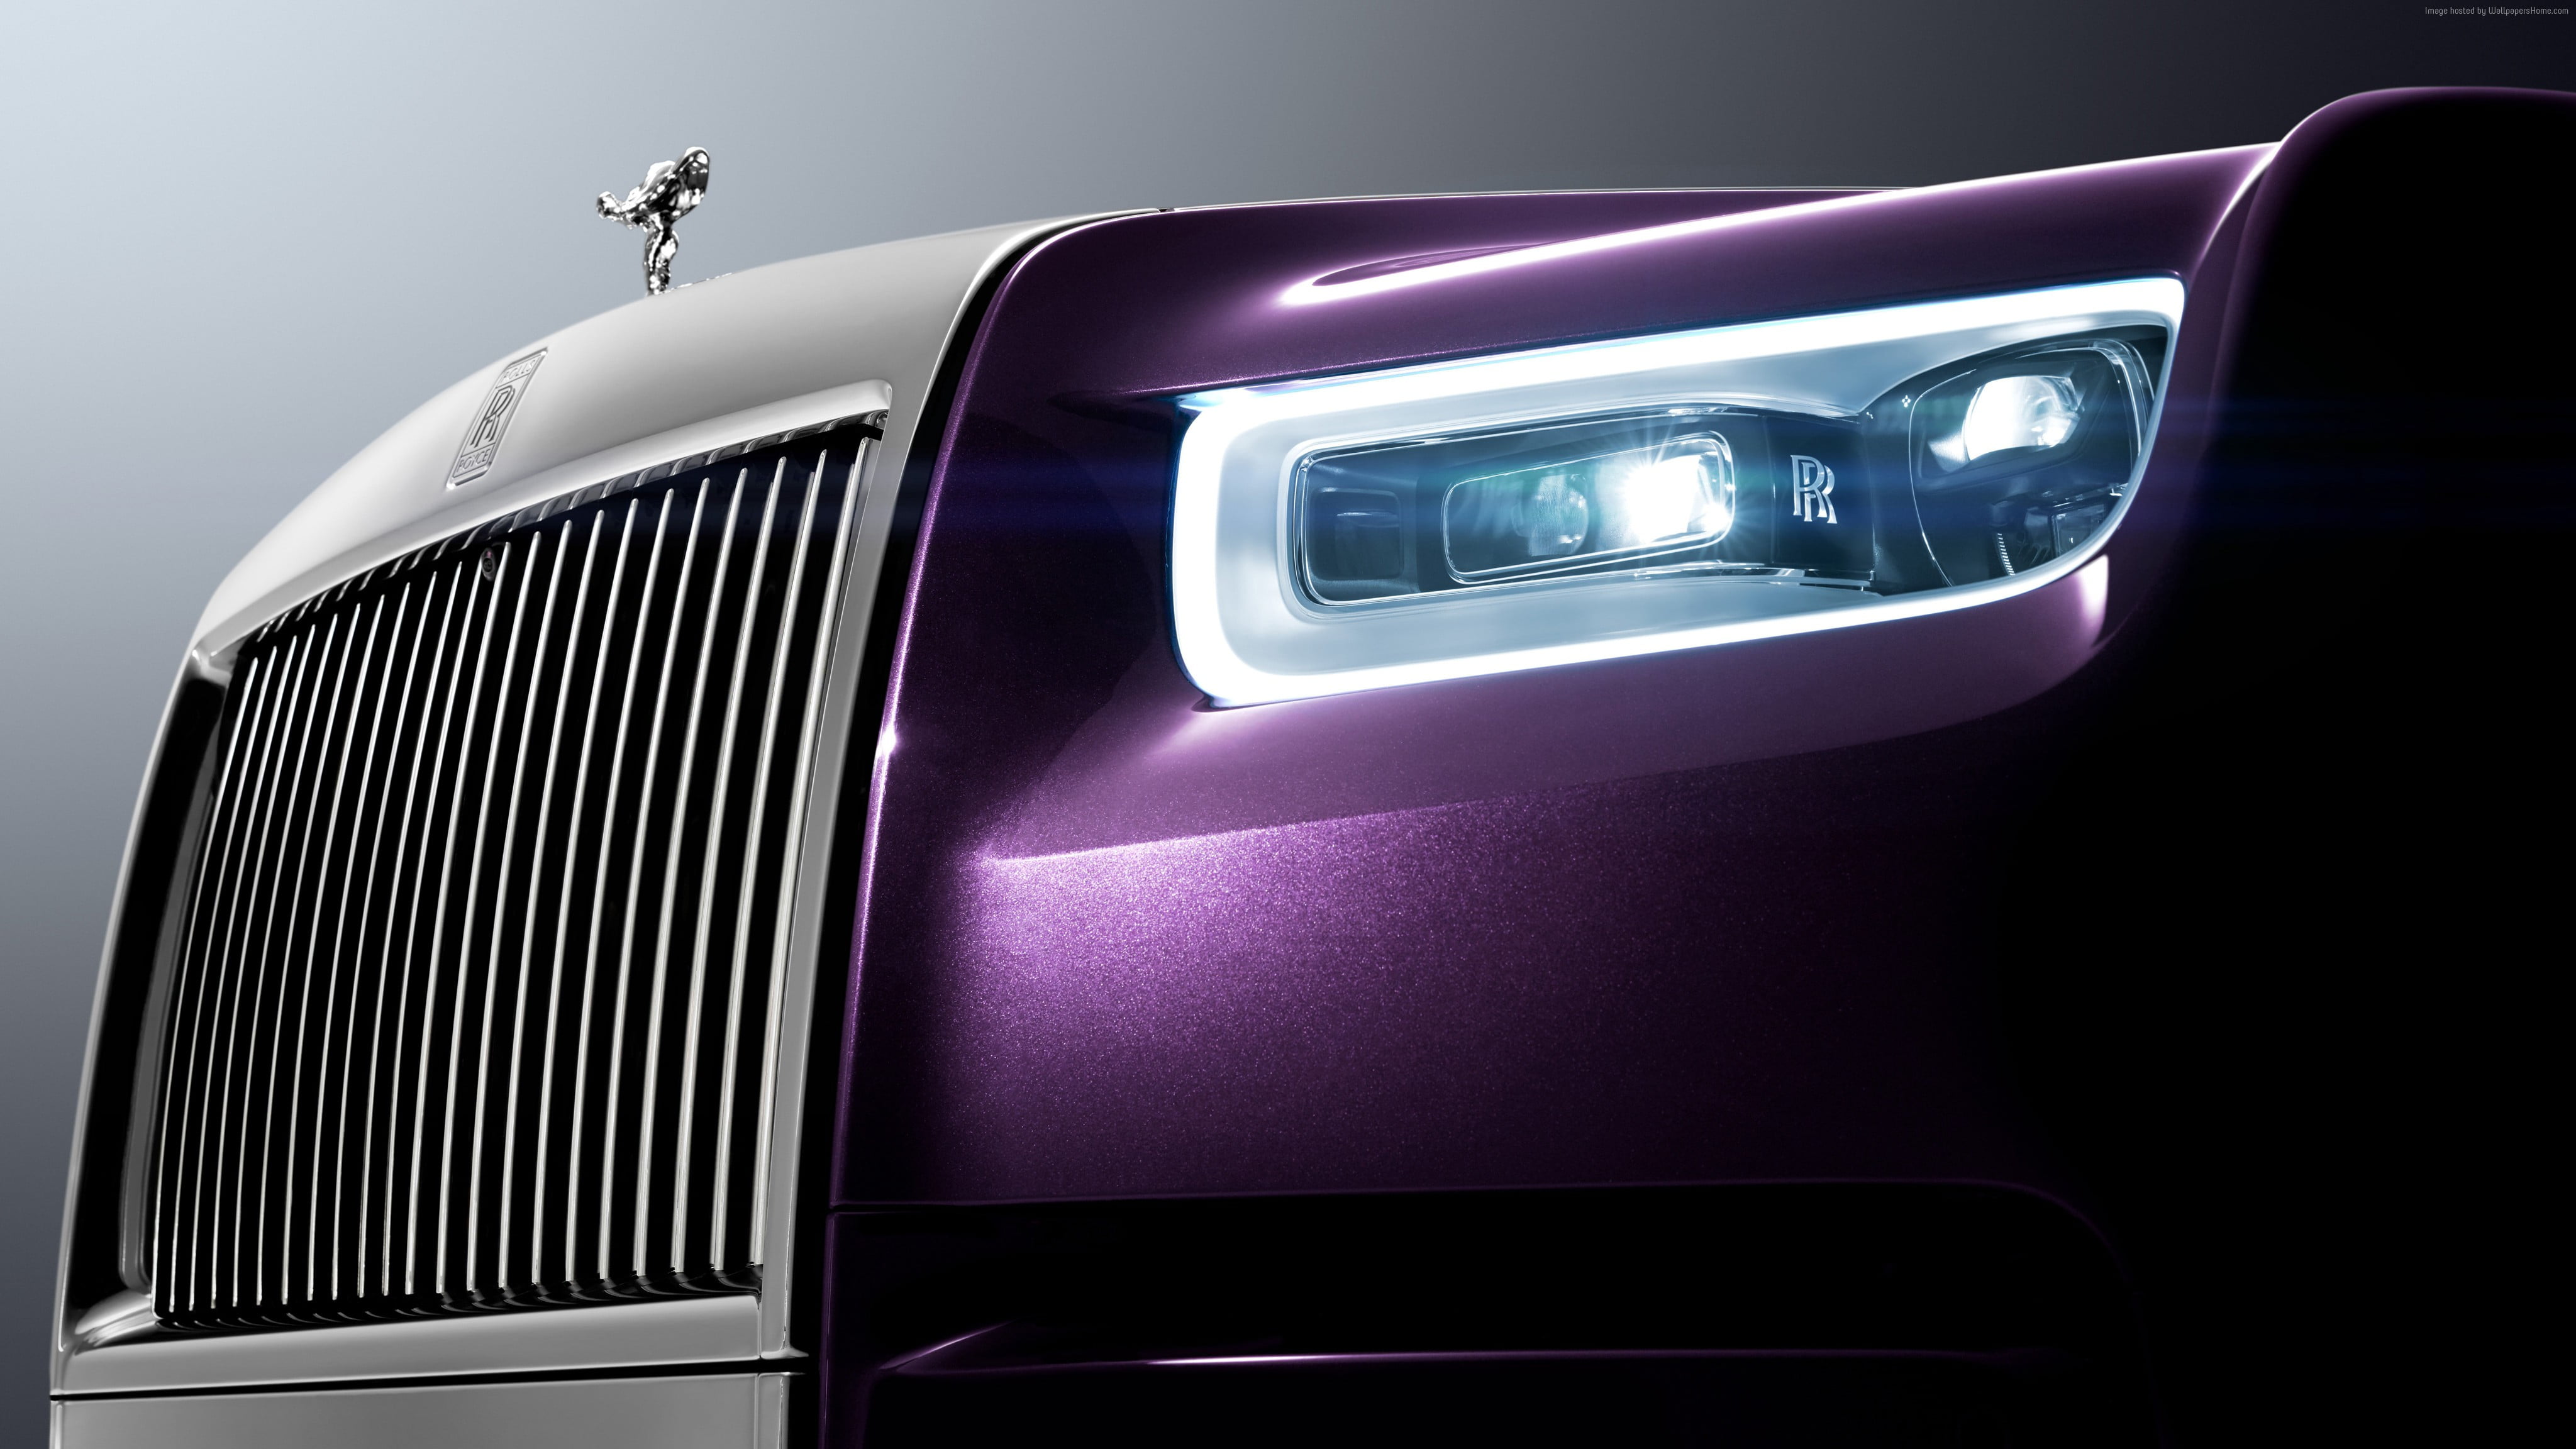 Rolls Royce Hd Wallpaper - Rolls Royce 2018 Phantom , HD Wallpaper & Backgrounds